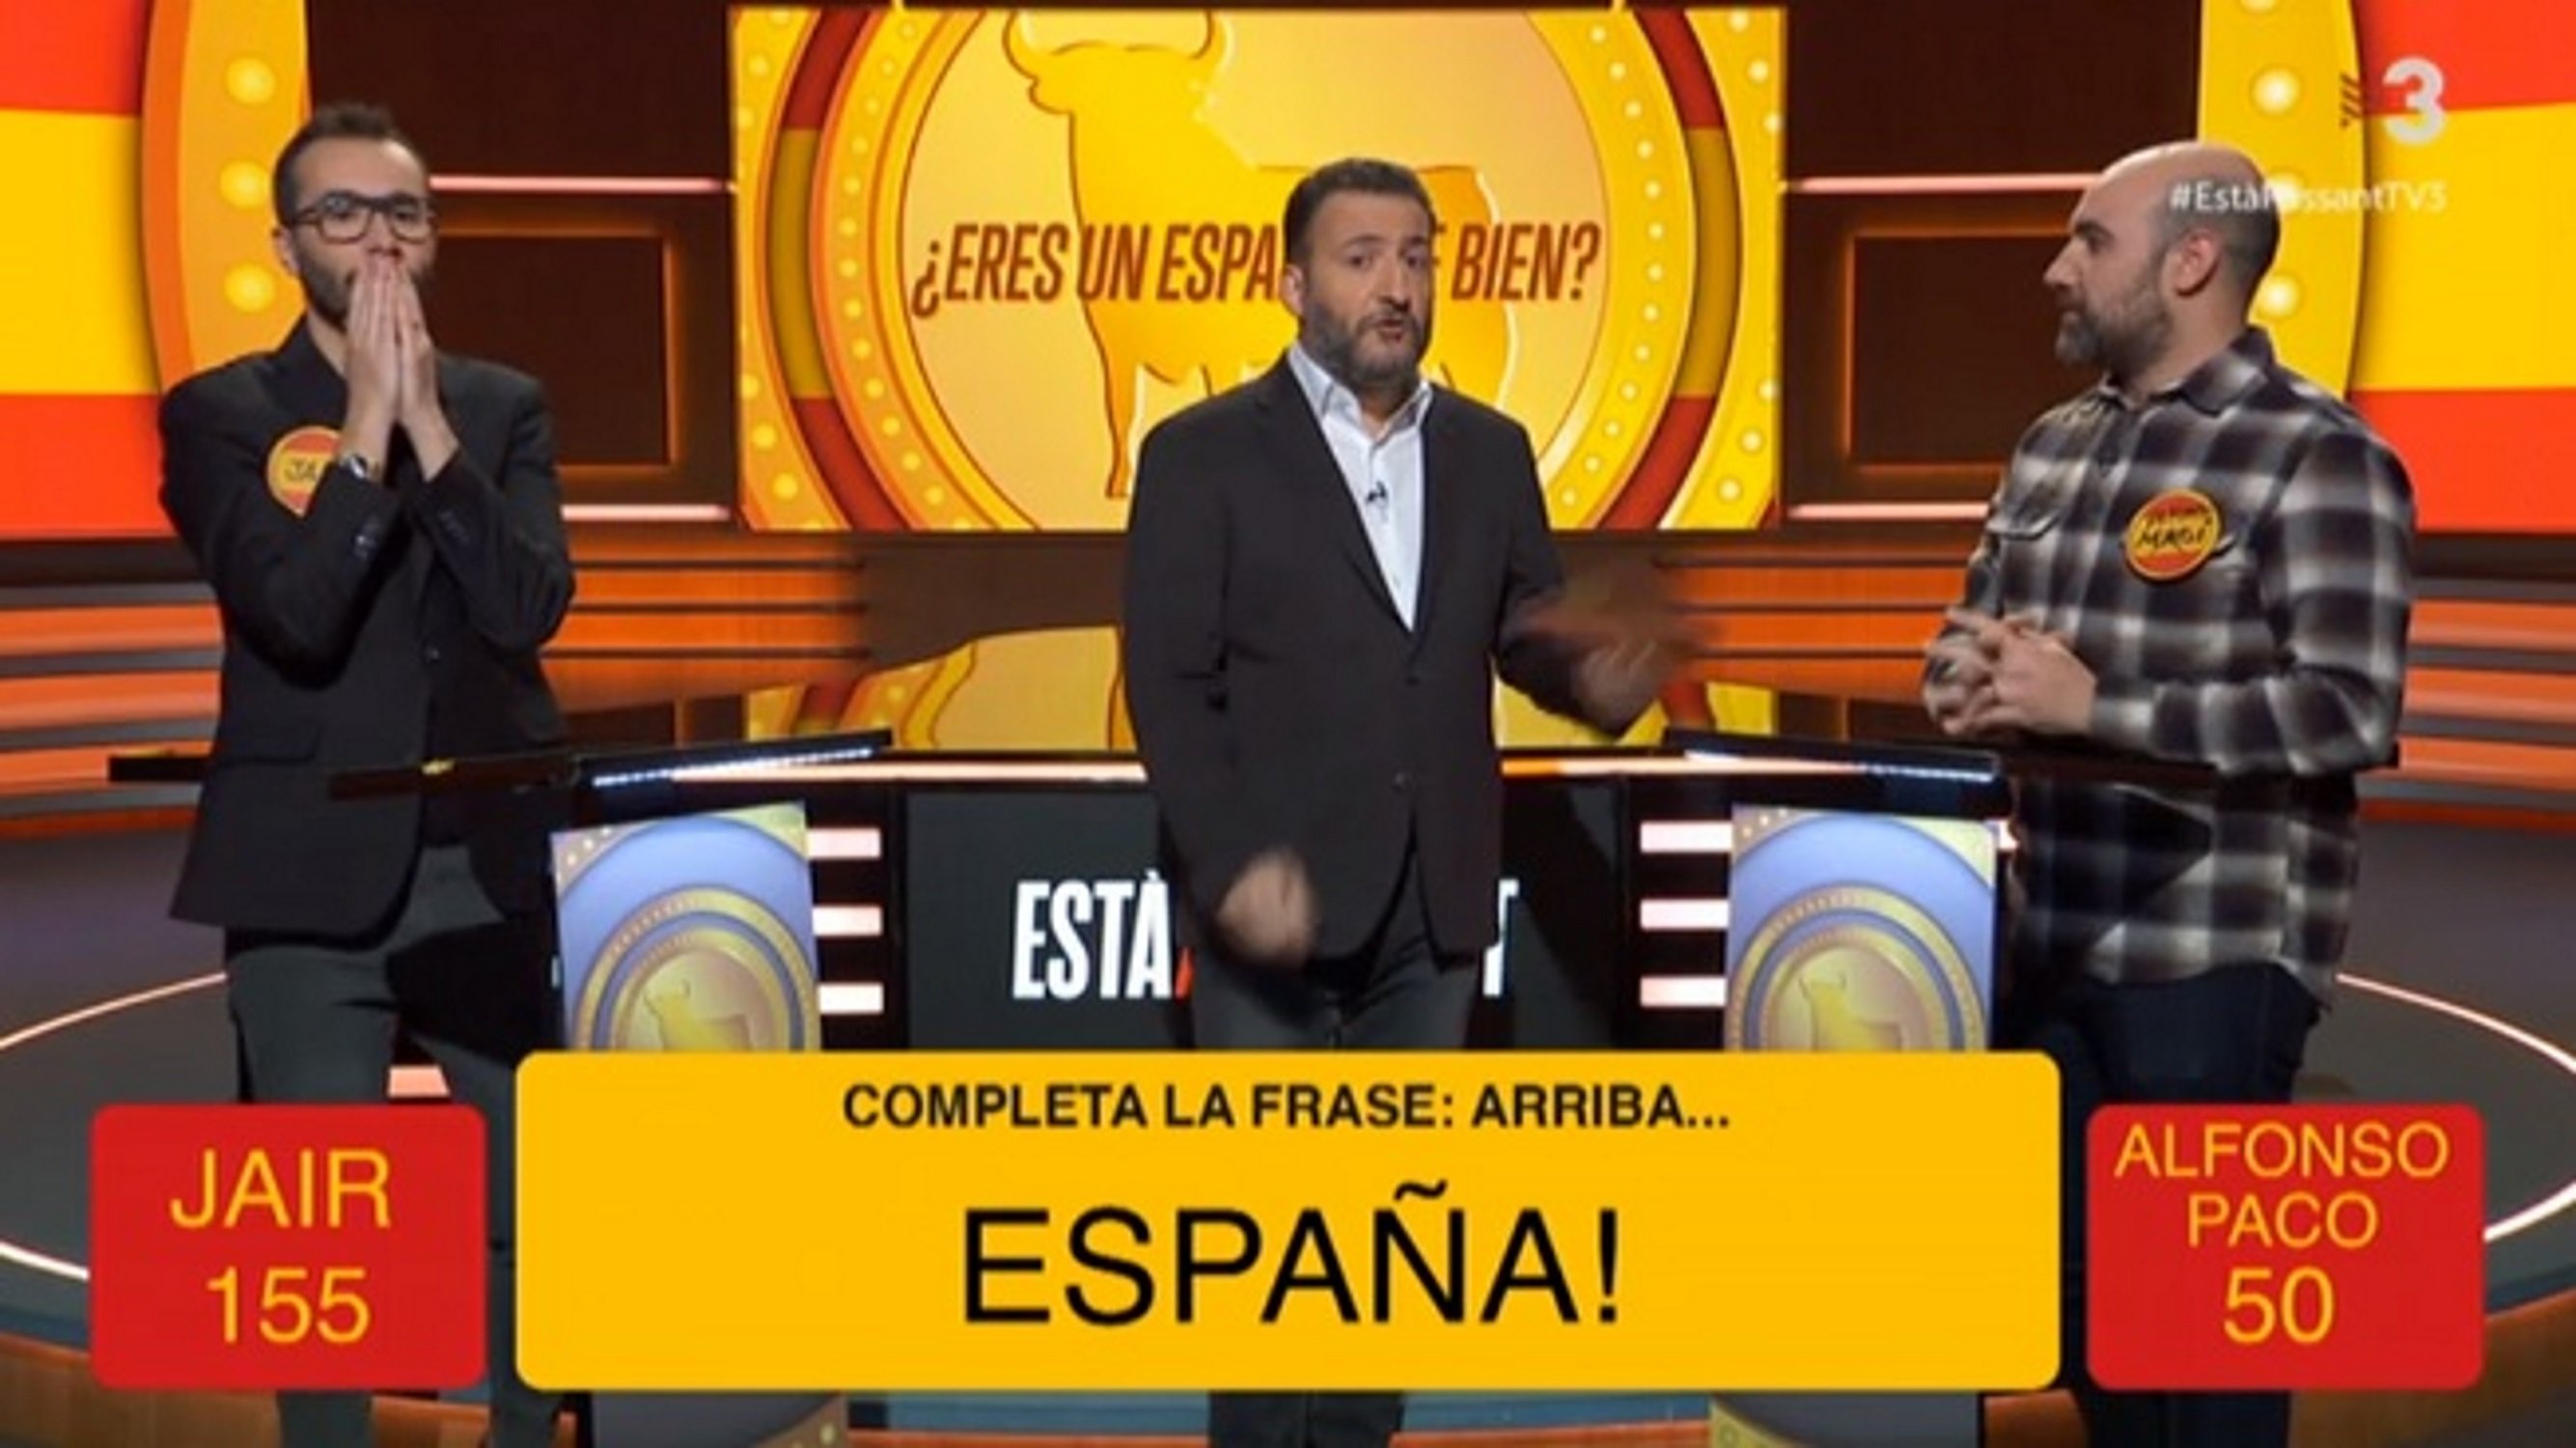 Toni Soler explica en qué consiste ser "un español de bien" en TV3